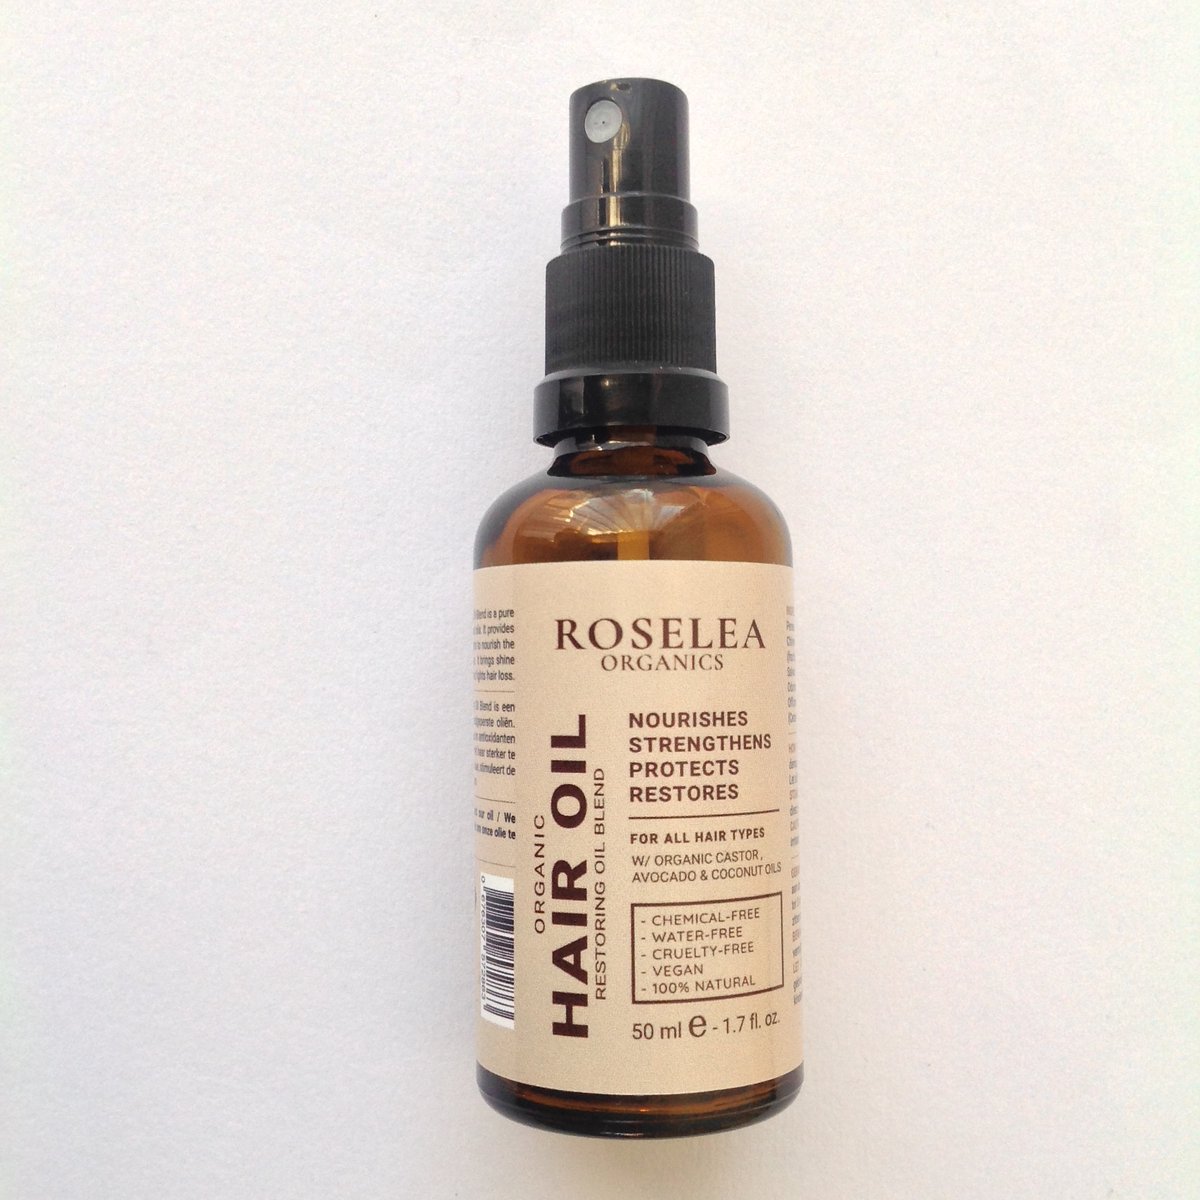 Roselea Organics - Natuurlijk Haargroei Serum – Stimuleert Haargroei - Voorkomt, Vermindert en Vertraagt Haaruitval - Geformuleerd met 100% natuurlijke ingrediënten.